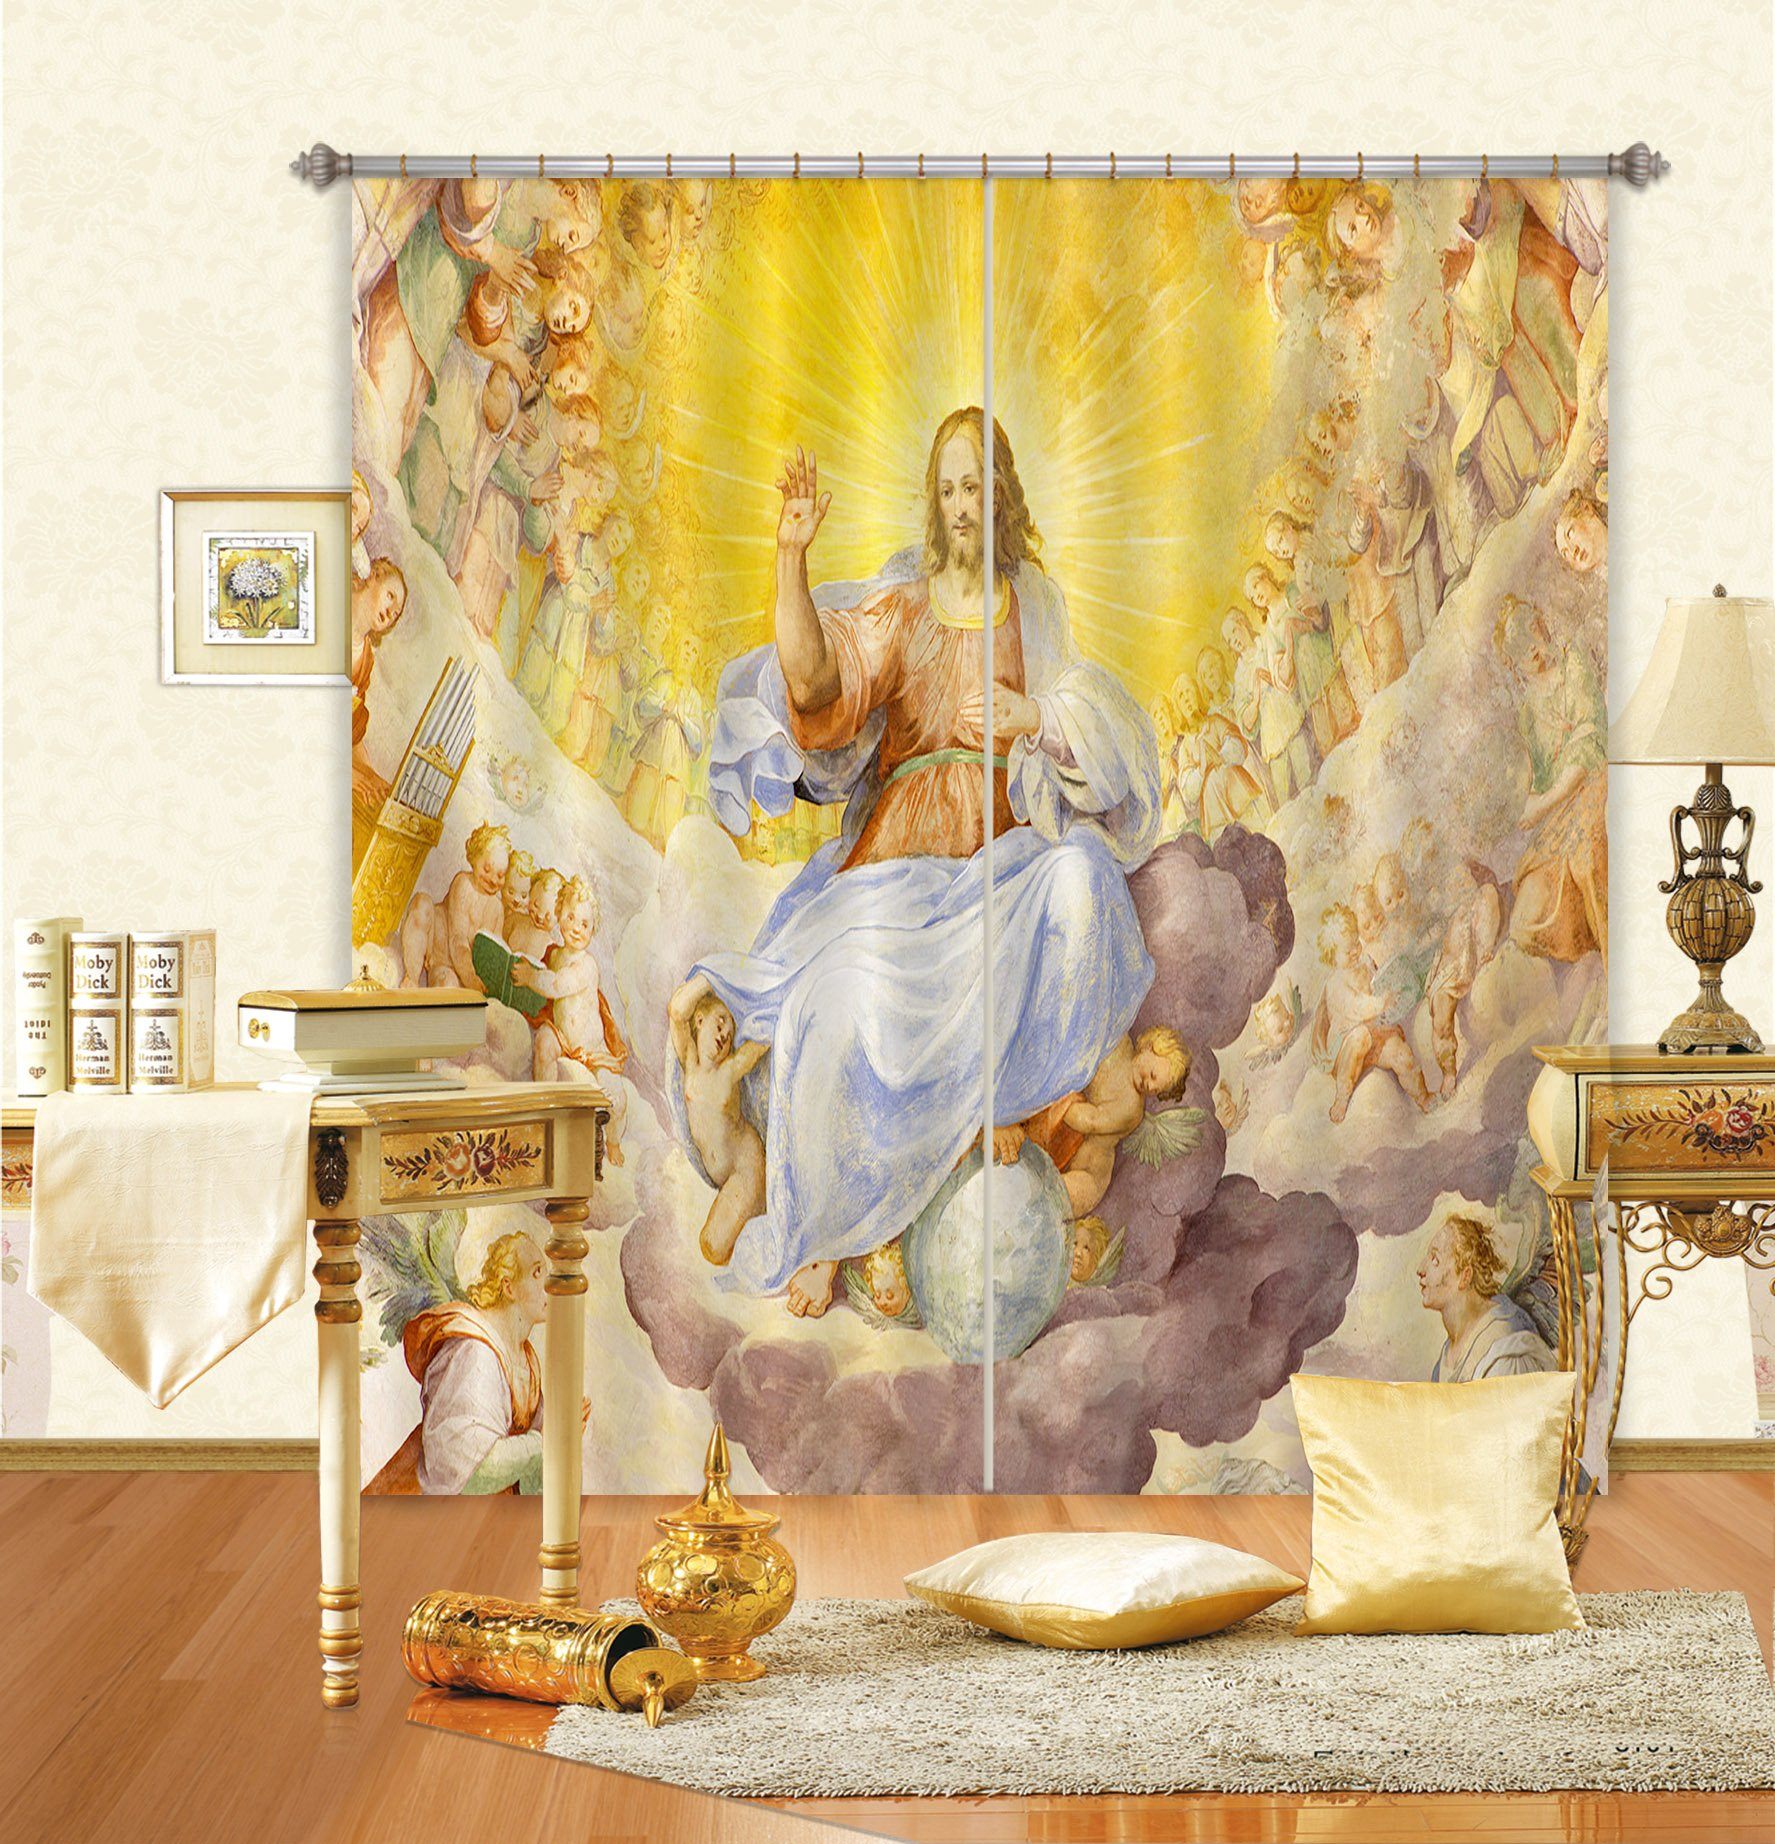 3D Throne Pearl 034 Curtains Drapes Curtains AJ Creativity Home 